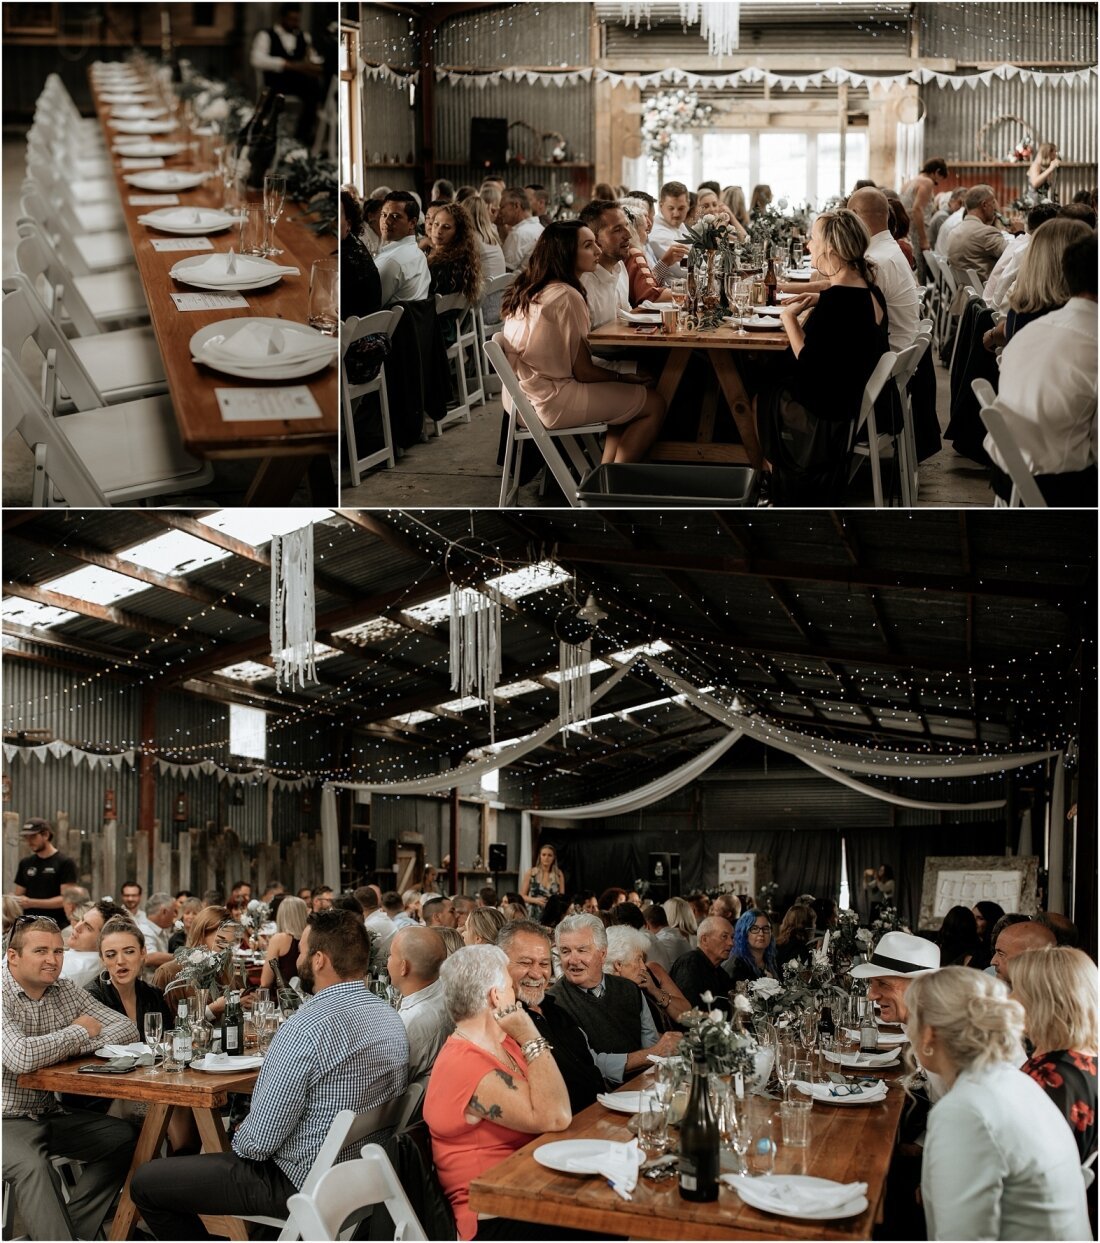 Zanda+Auckland+wedding+photographer+boho+vintage+lace+retro+The+barn+Waimauku+venue+New+Zealand_57.jpeg